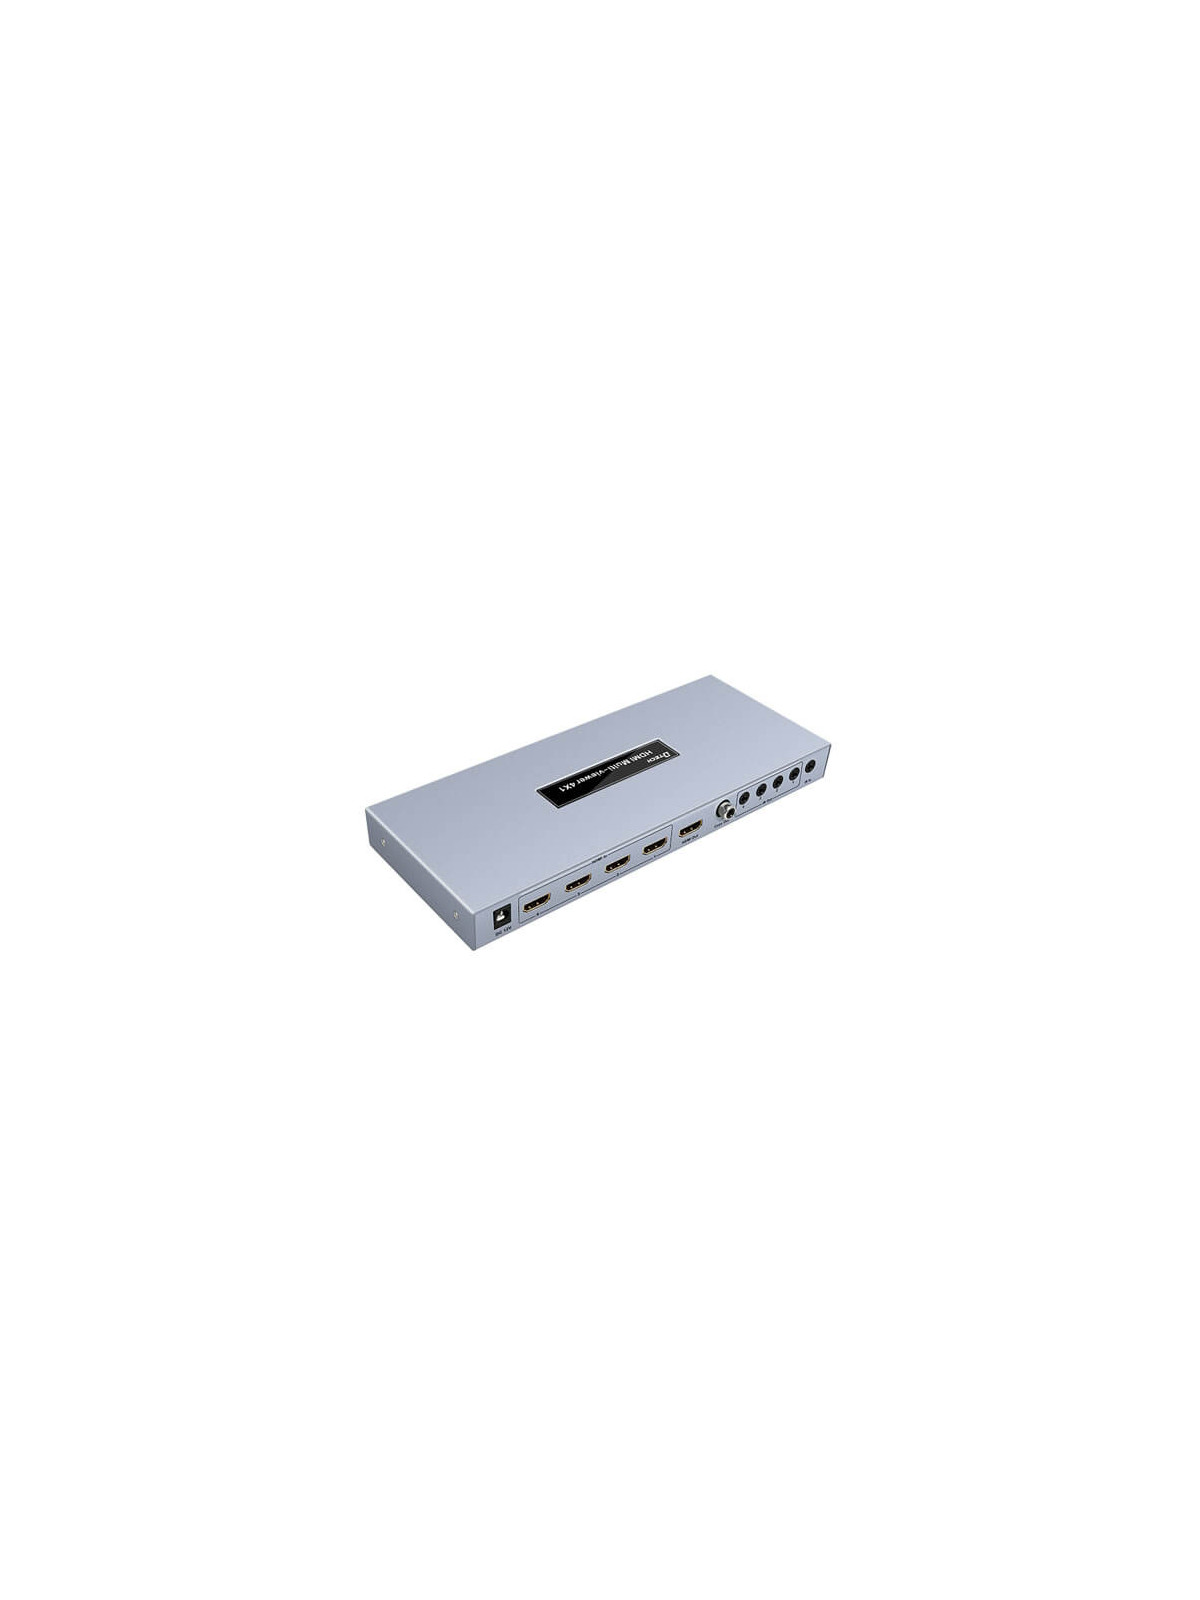 Quad HDMI 4 entradas 1080P (4x1) con mando PoP extensor IR (HDMI-VIEWER-4)